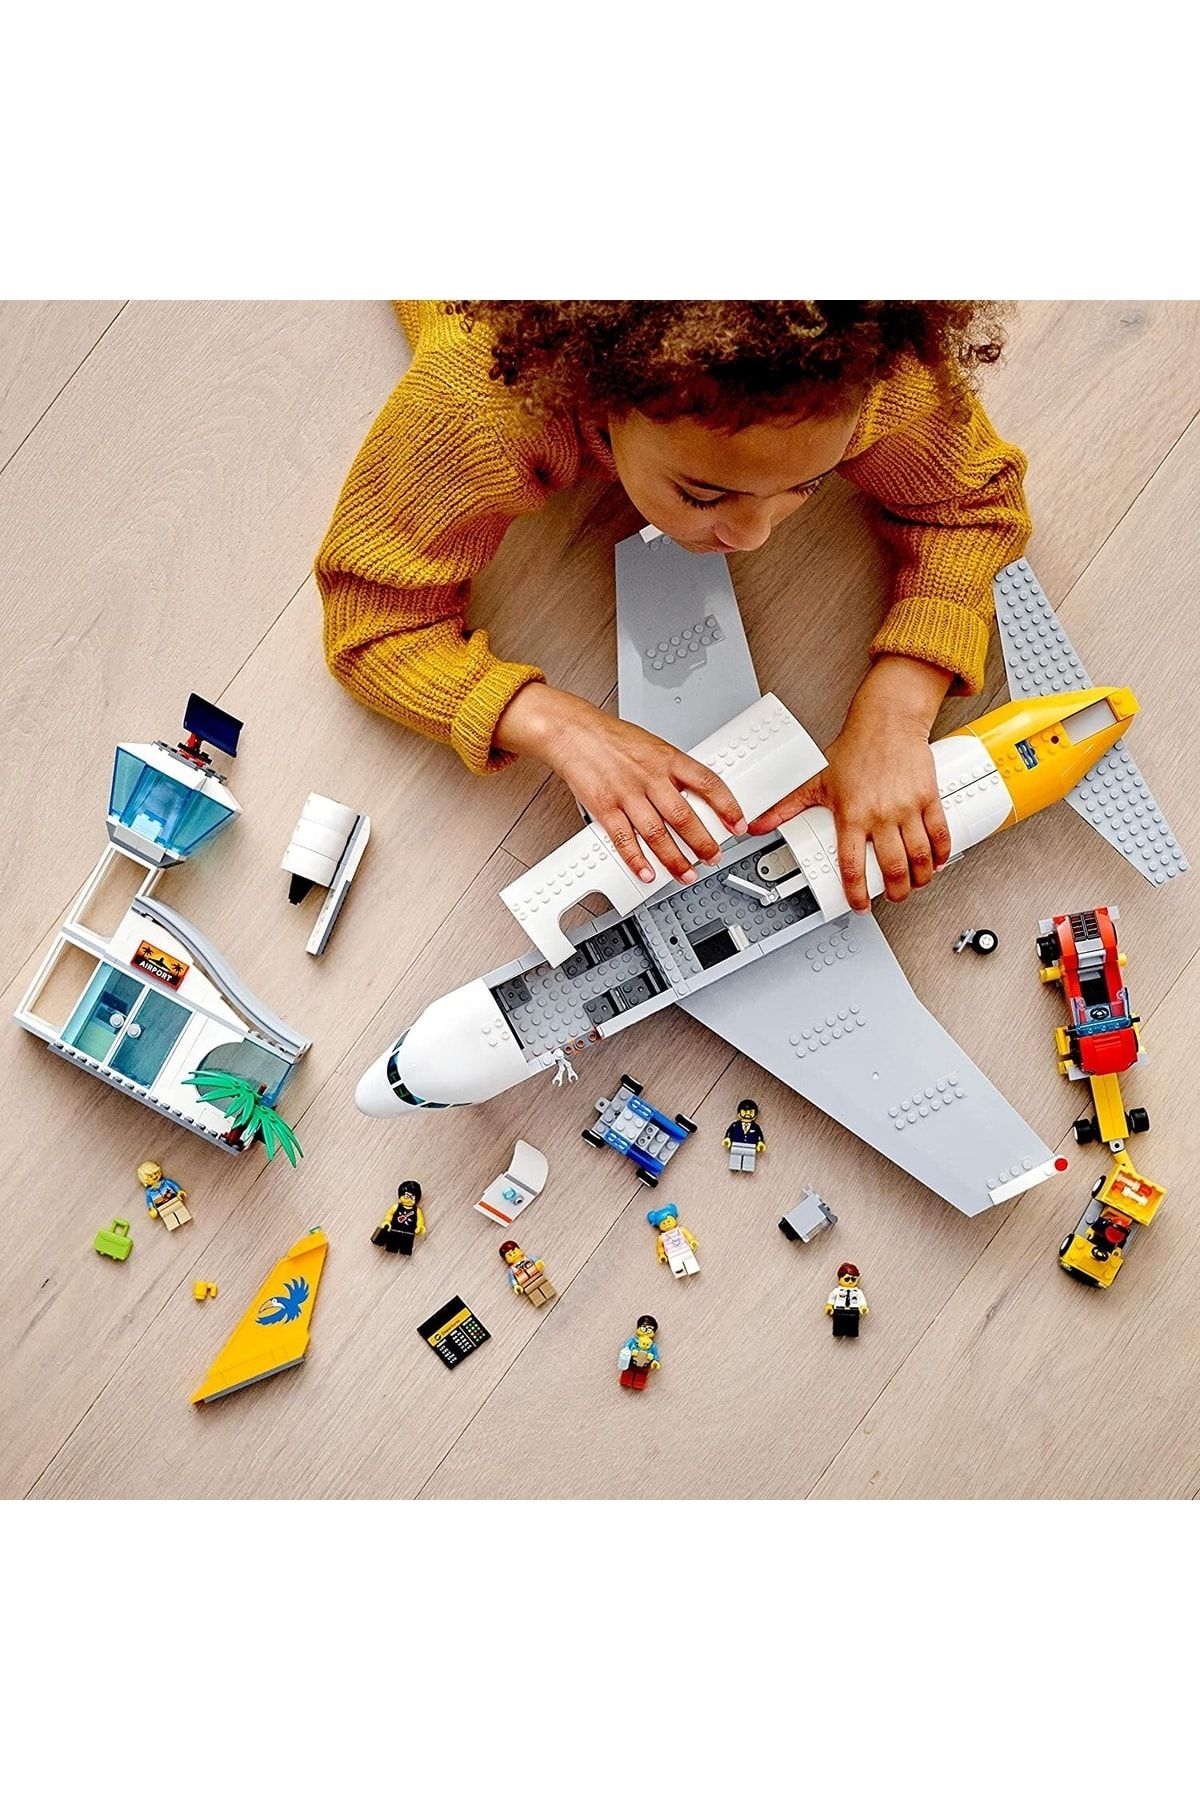 City Yolcu Uçağı 60262 Yapım Oyuncağı, Çocuklar için Güzel bir Yapım Oyuncağı (669 Parça)